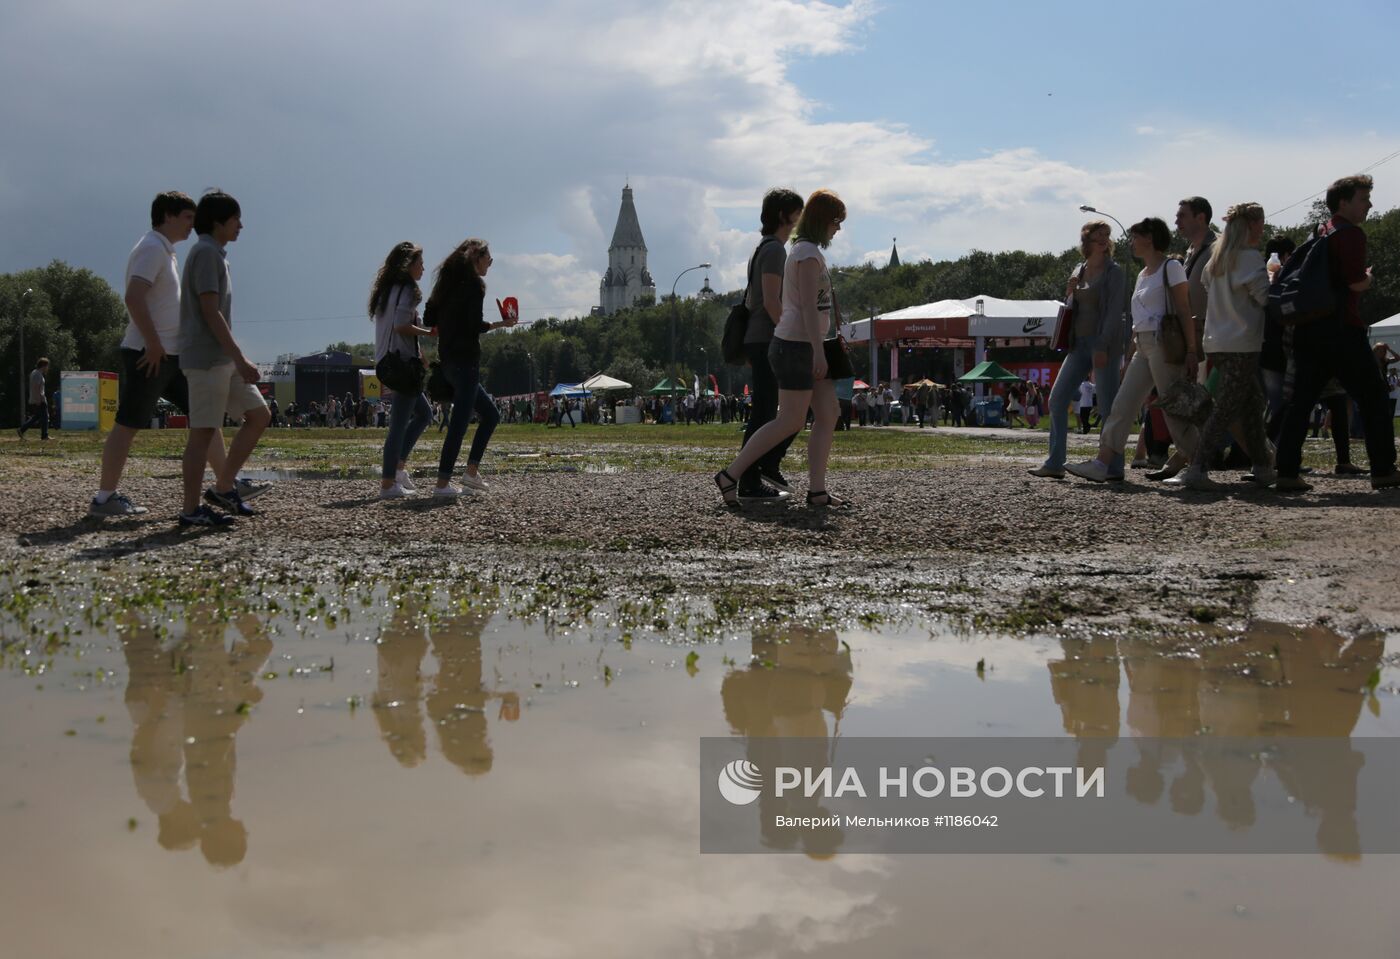 Фестиваль "Пикник "Афиши" в Москве